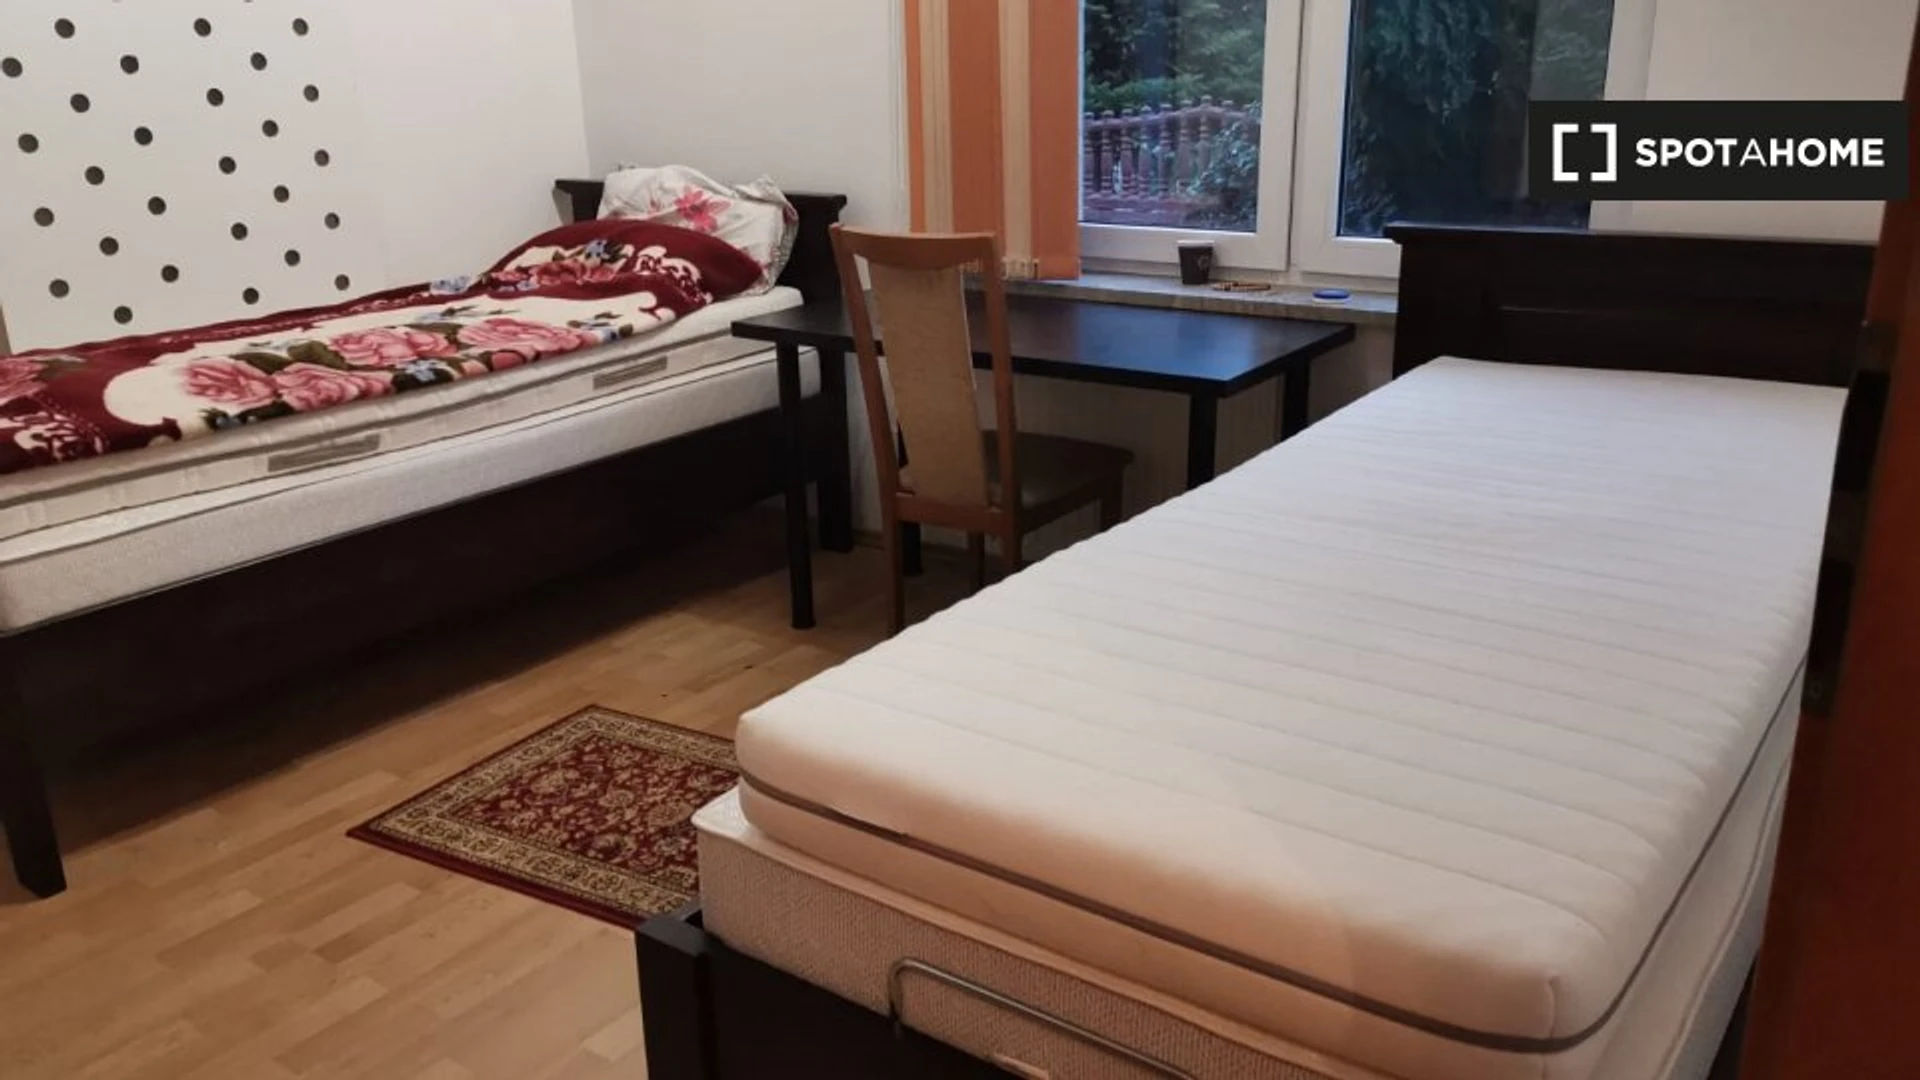 Quarto para alugar com cama de casal em Posnânia